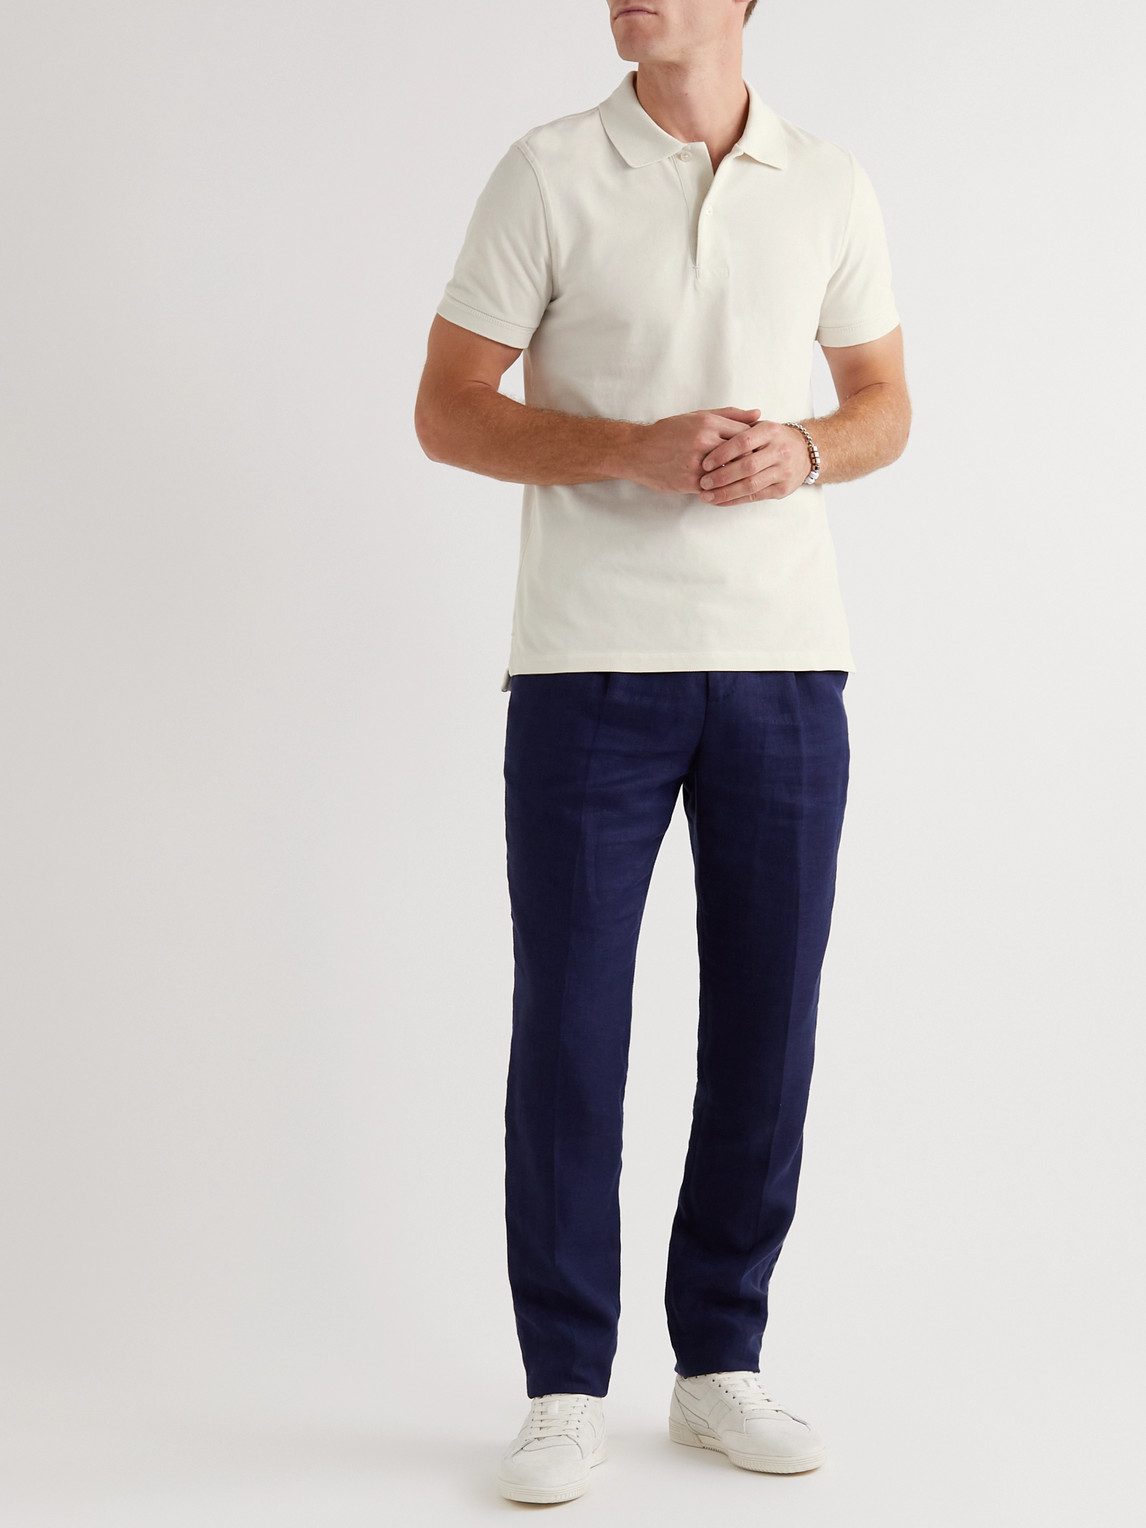 Shop Tom Ford Cotton-piqué Polo Shirt In Neutrals